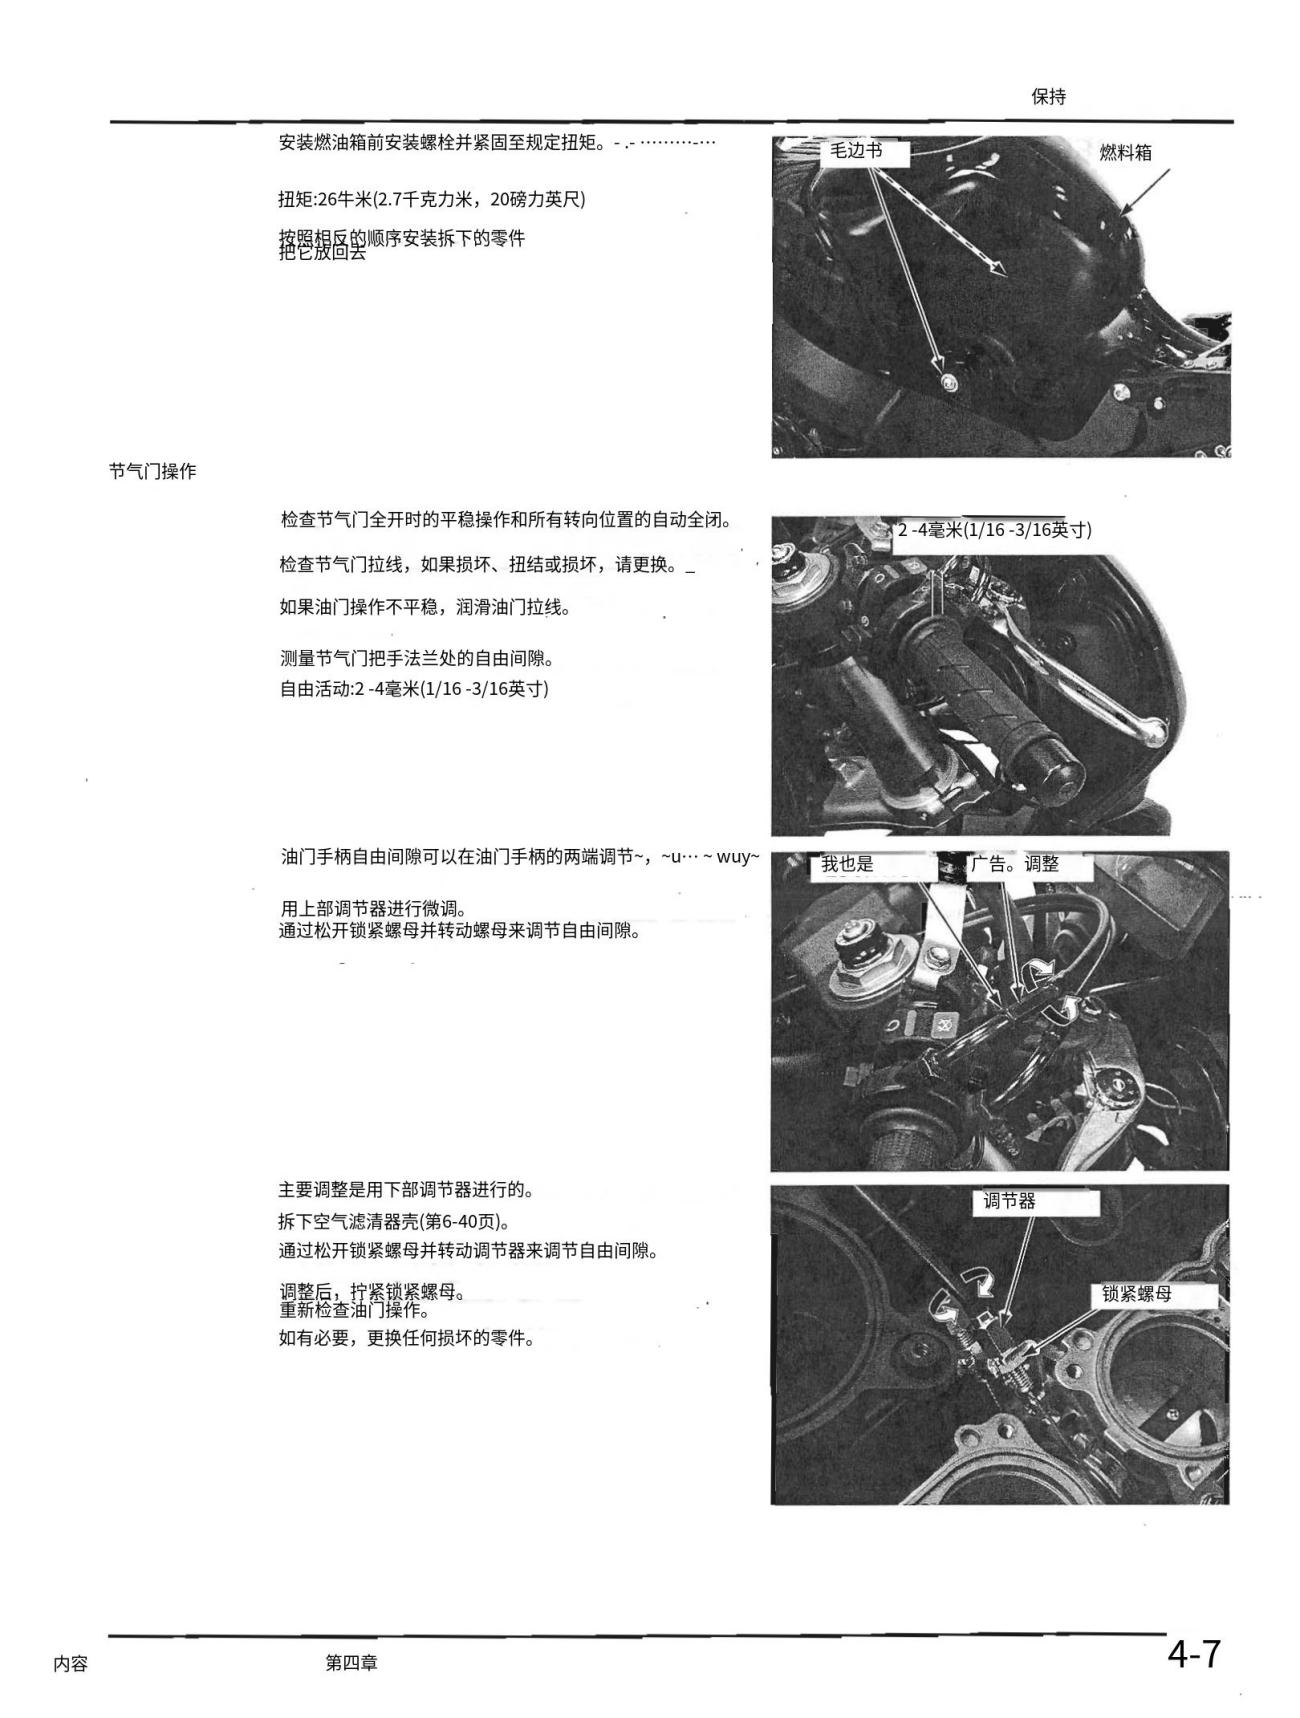 简体中文2004-2007HONDACBR1000RR维修手册插图2